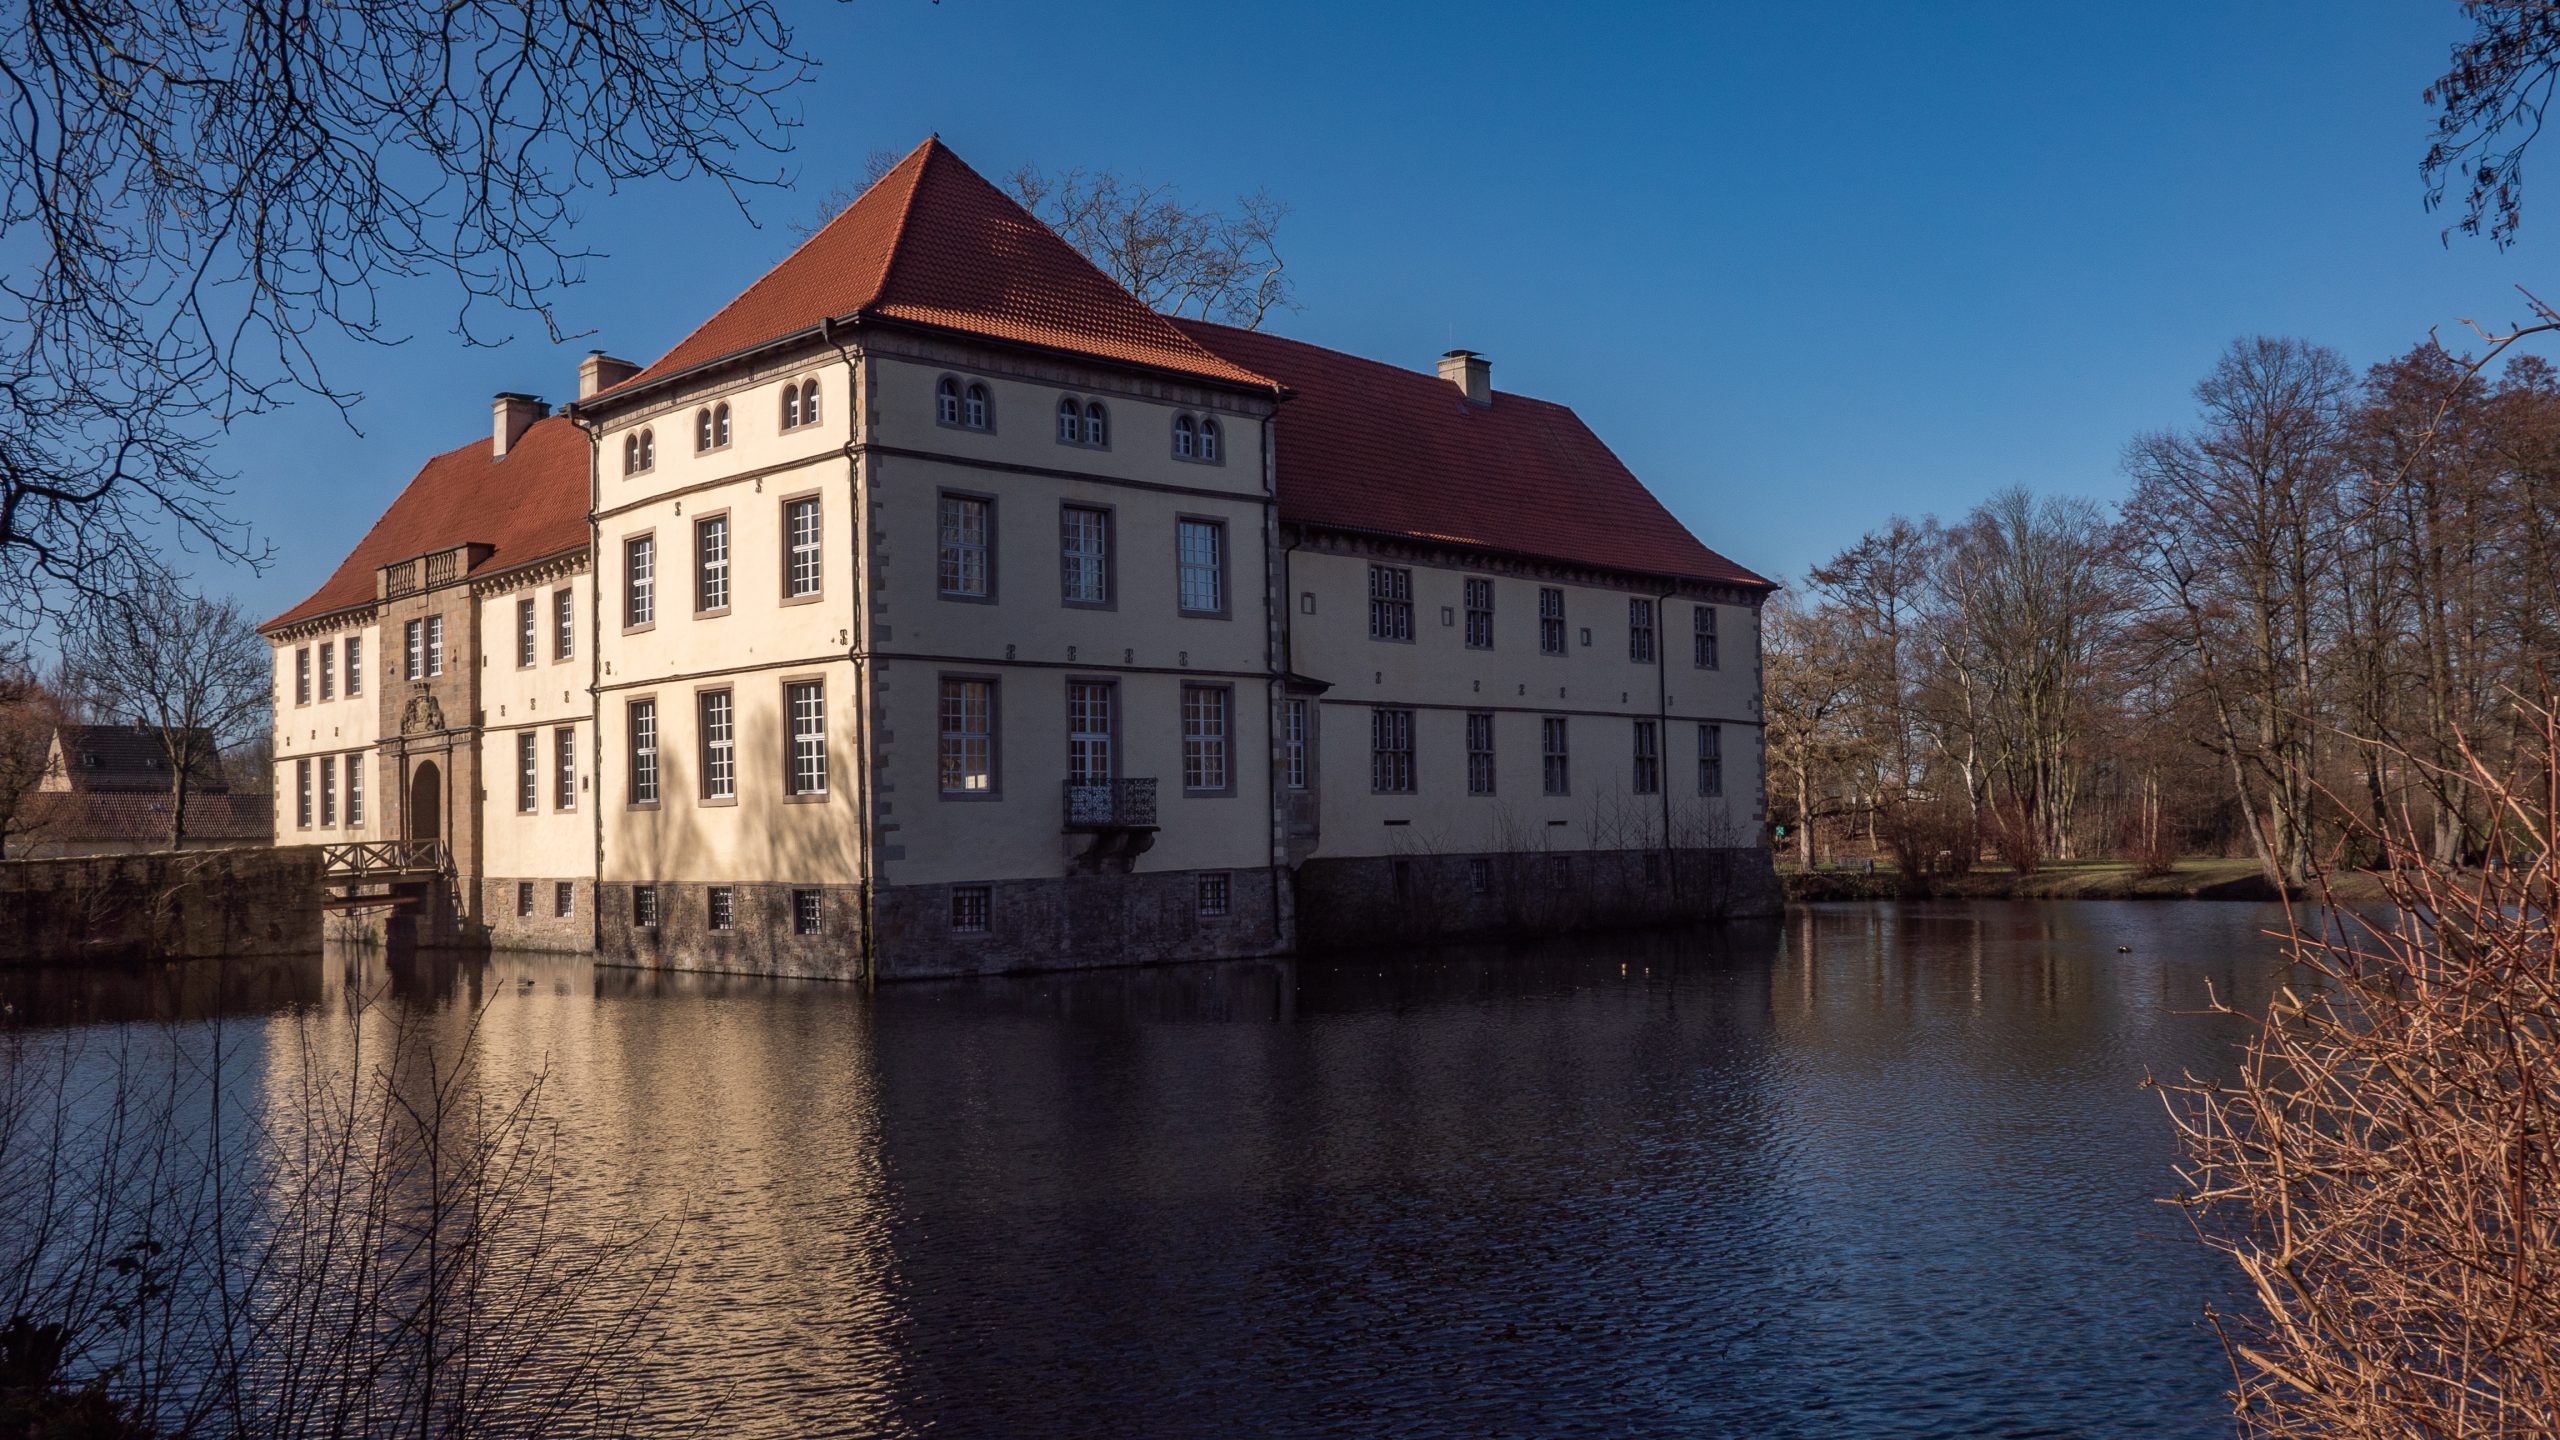 Das Bild zeigt das Schloss Strünkede in Herne